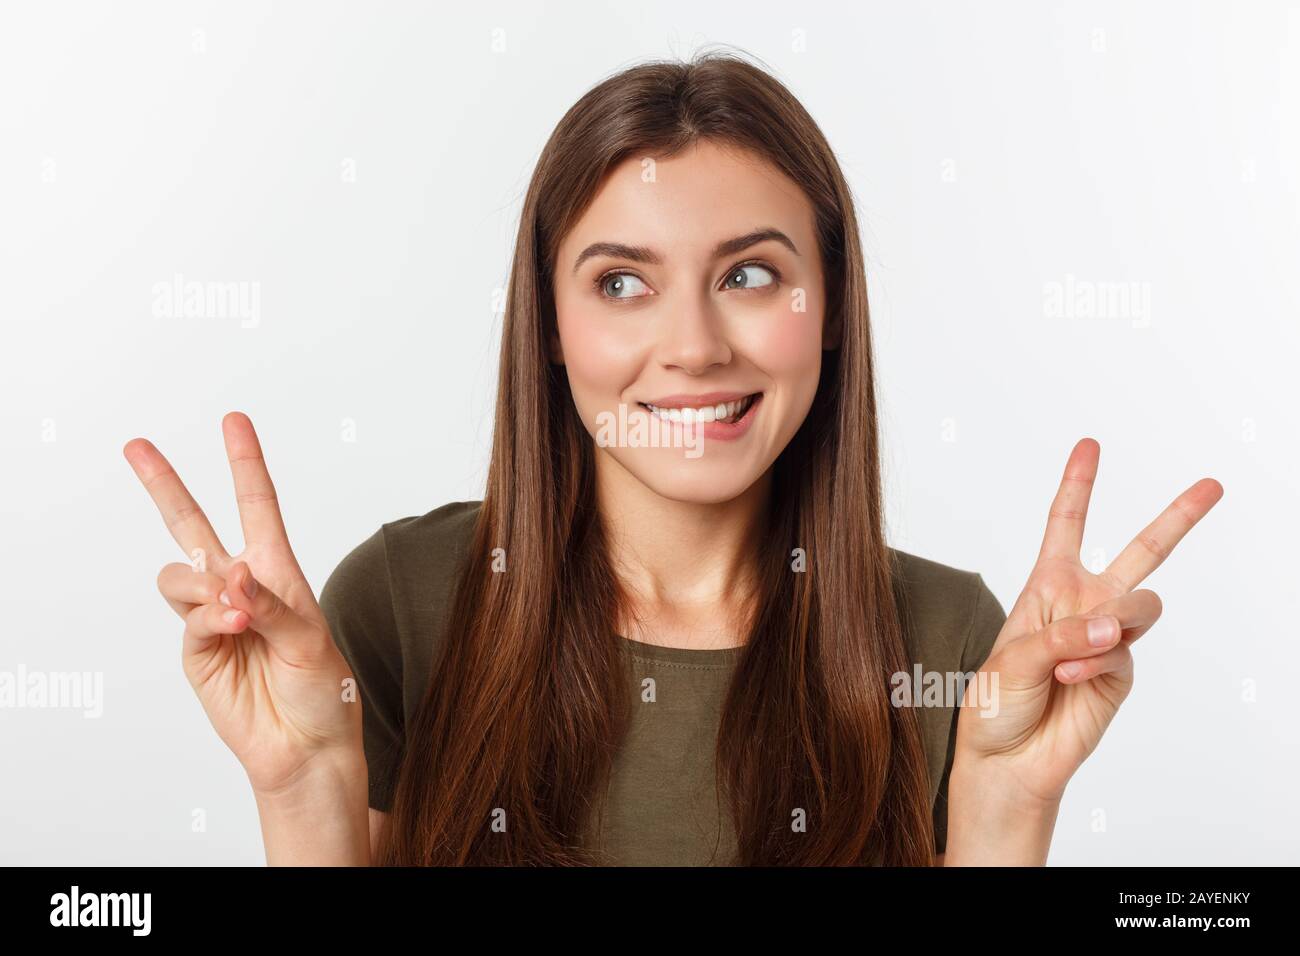 Jeune femme montrant deux doigts, positif ou geste de paix, sur fond blanc. Banque D'Images